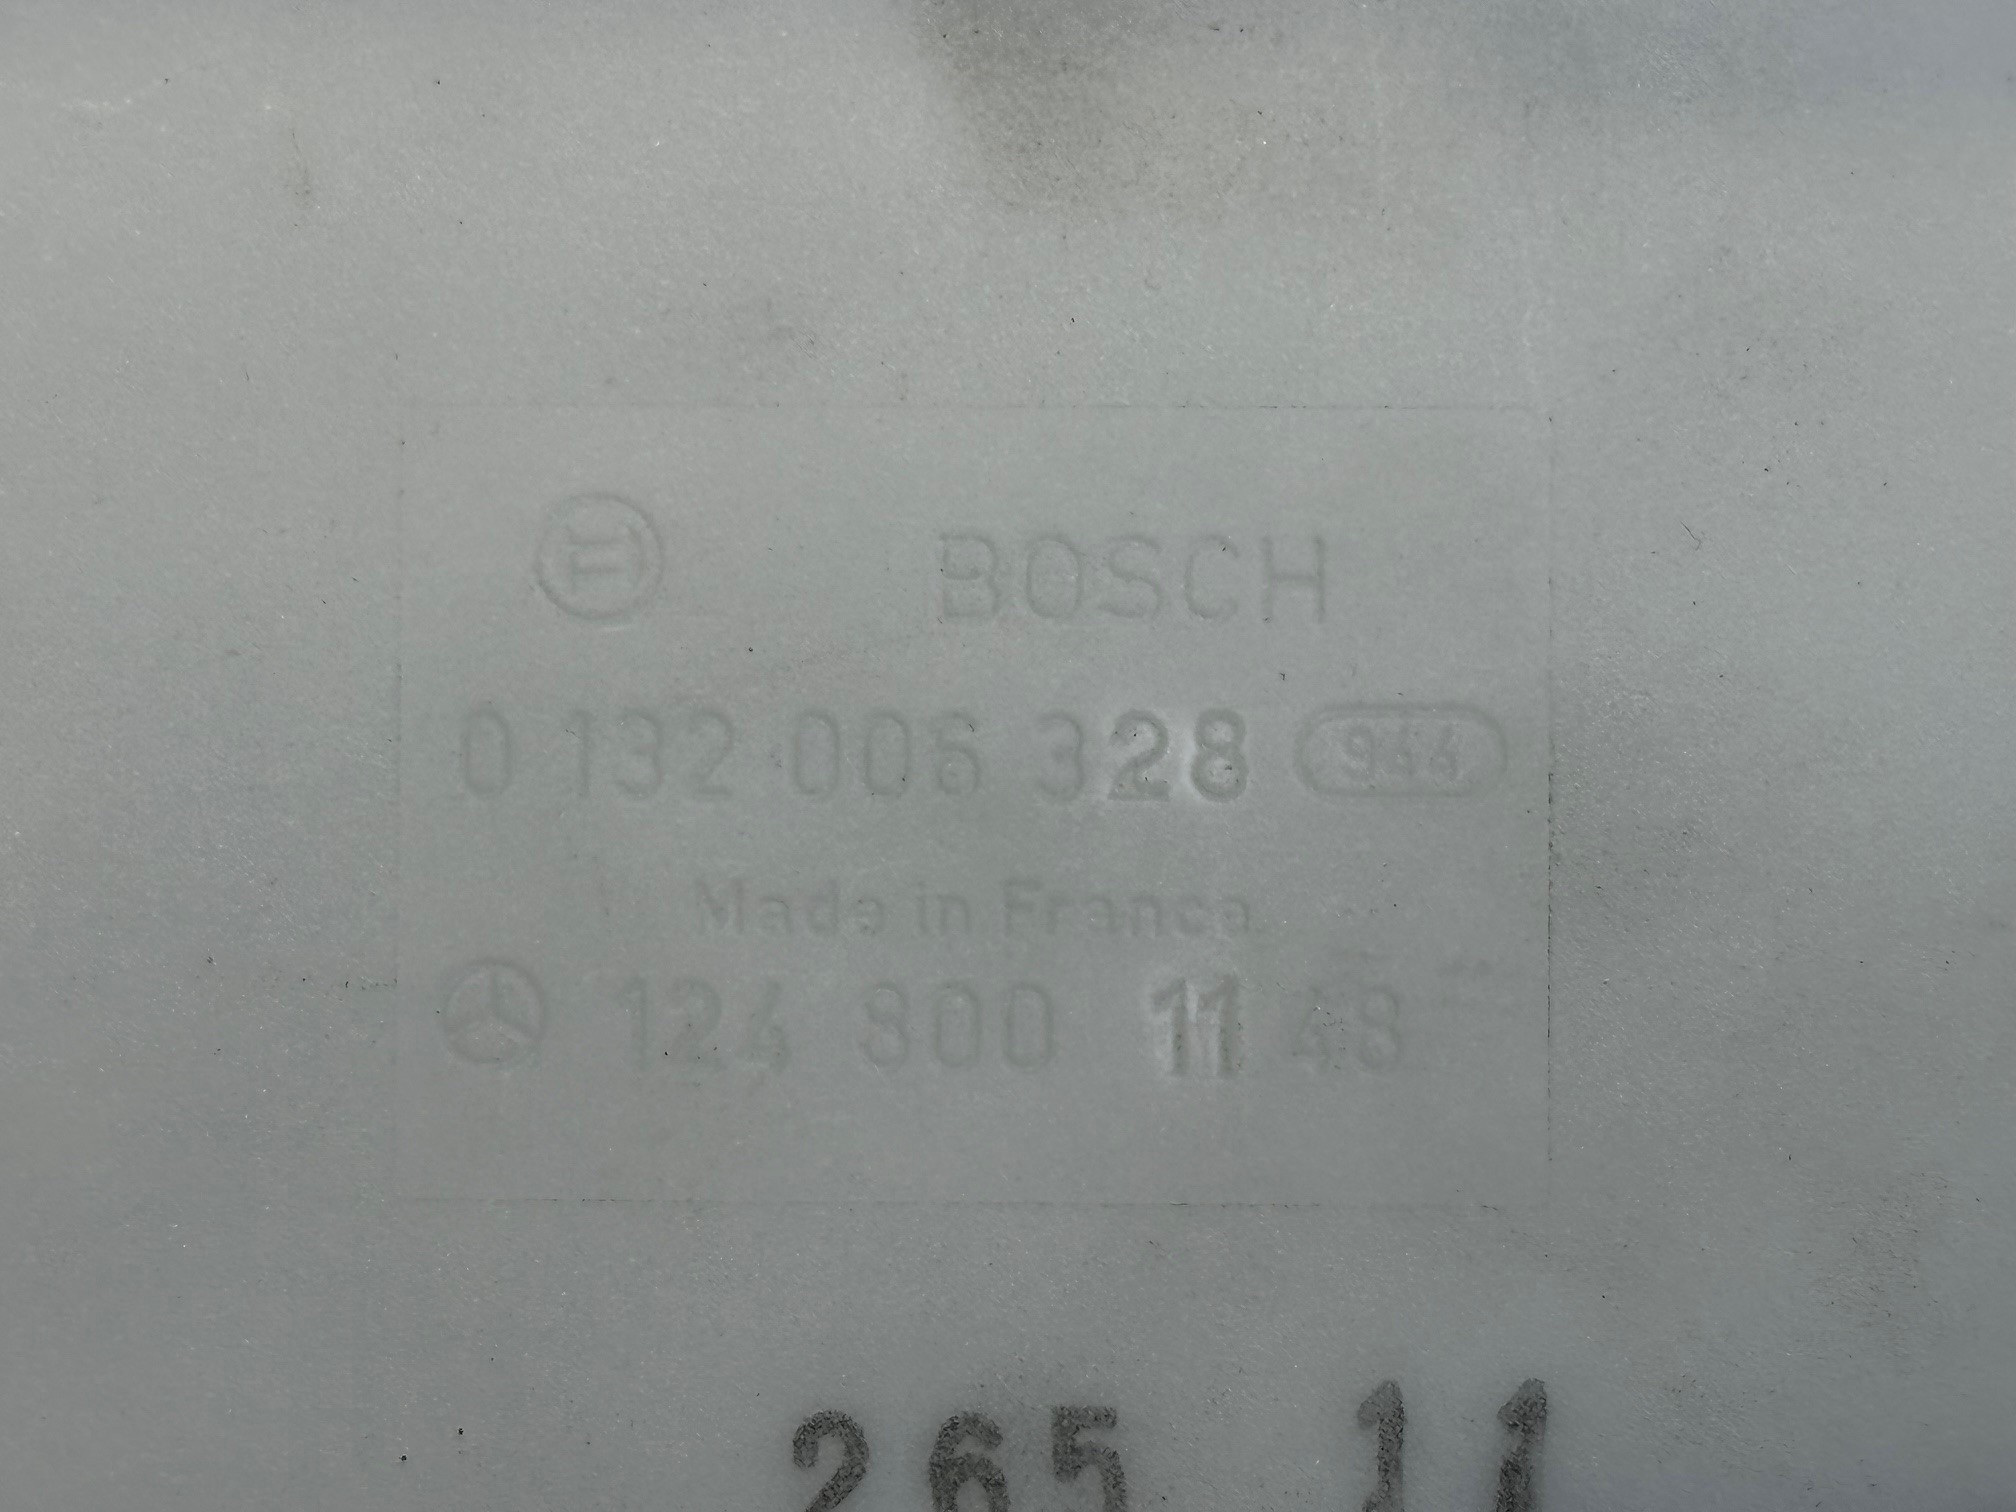 Pumpe Bosch ZV Unterdruckpumpe Mercedes-Benz W107 W124 W126 W201 Vacuumpumpe Zentralverriegelung A1248002148/ A1248000148/ A1248000948/ A1248000748/ A1248001448 A1248000348/ A1248001148/ A1248001348/ A1248001148 Bosch 0132006328